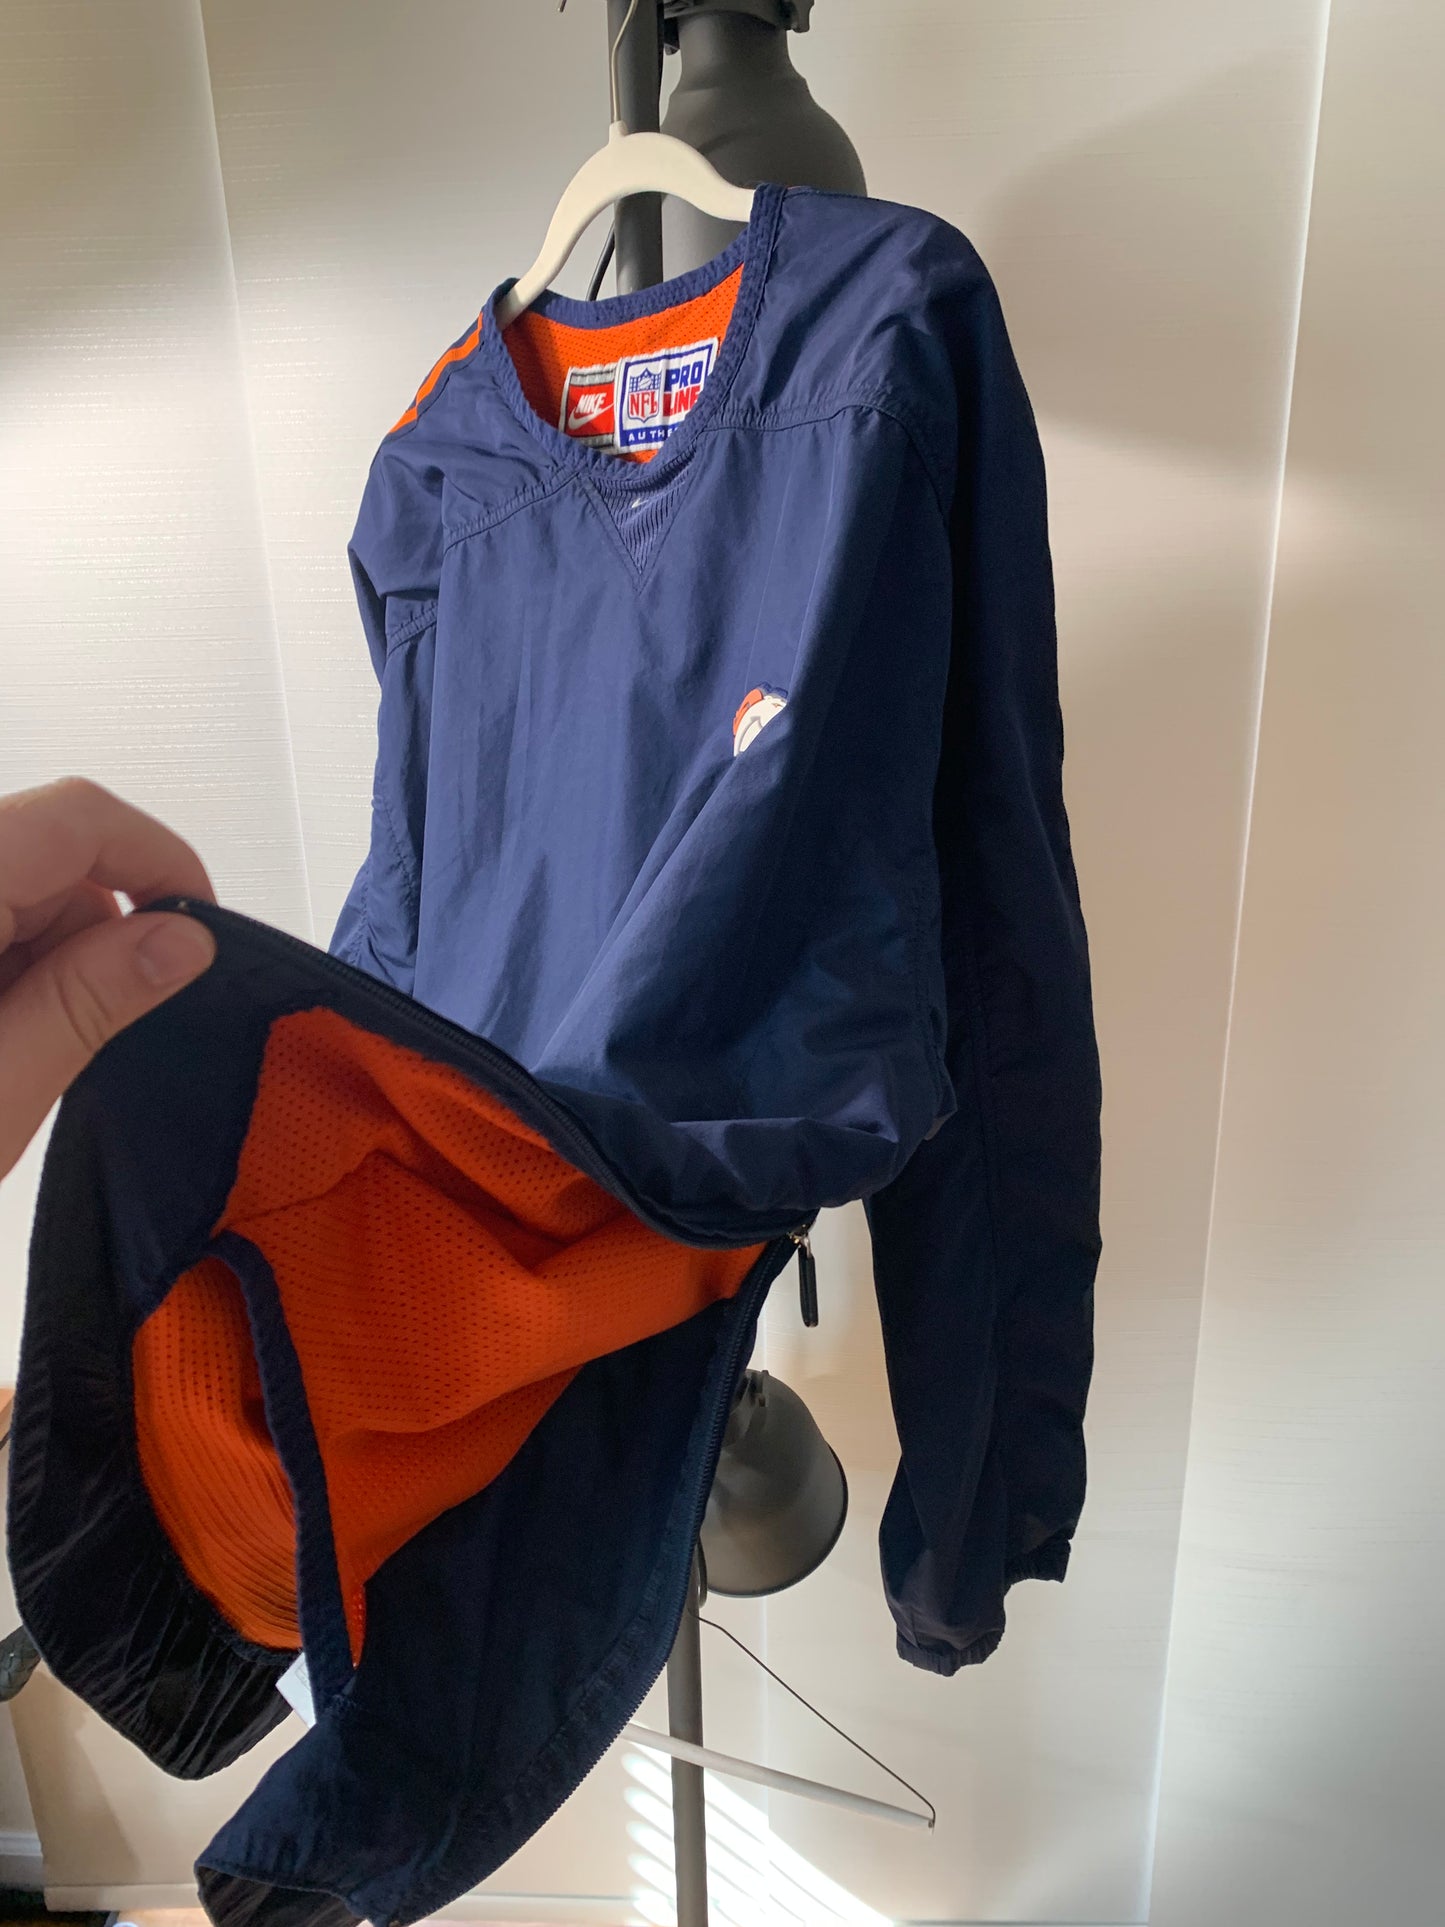 Broncos Nike jacket